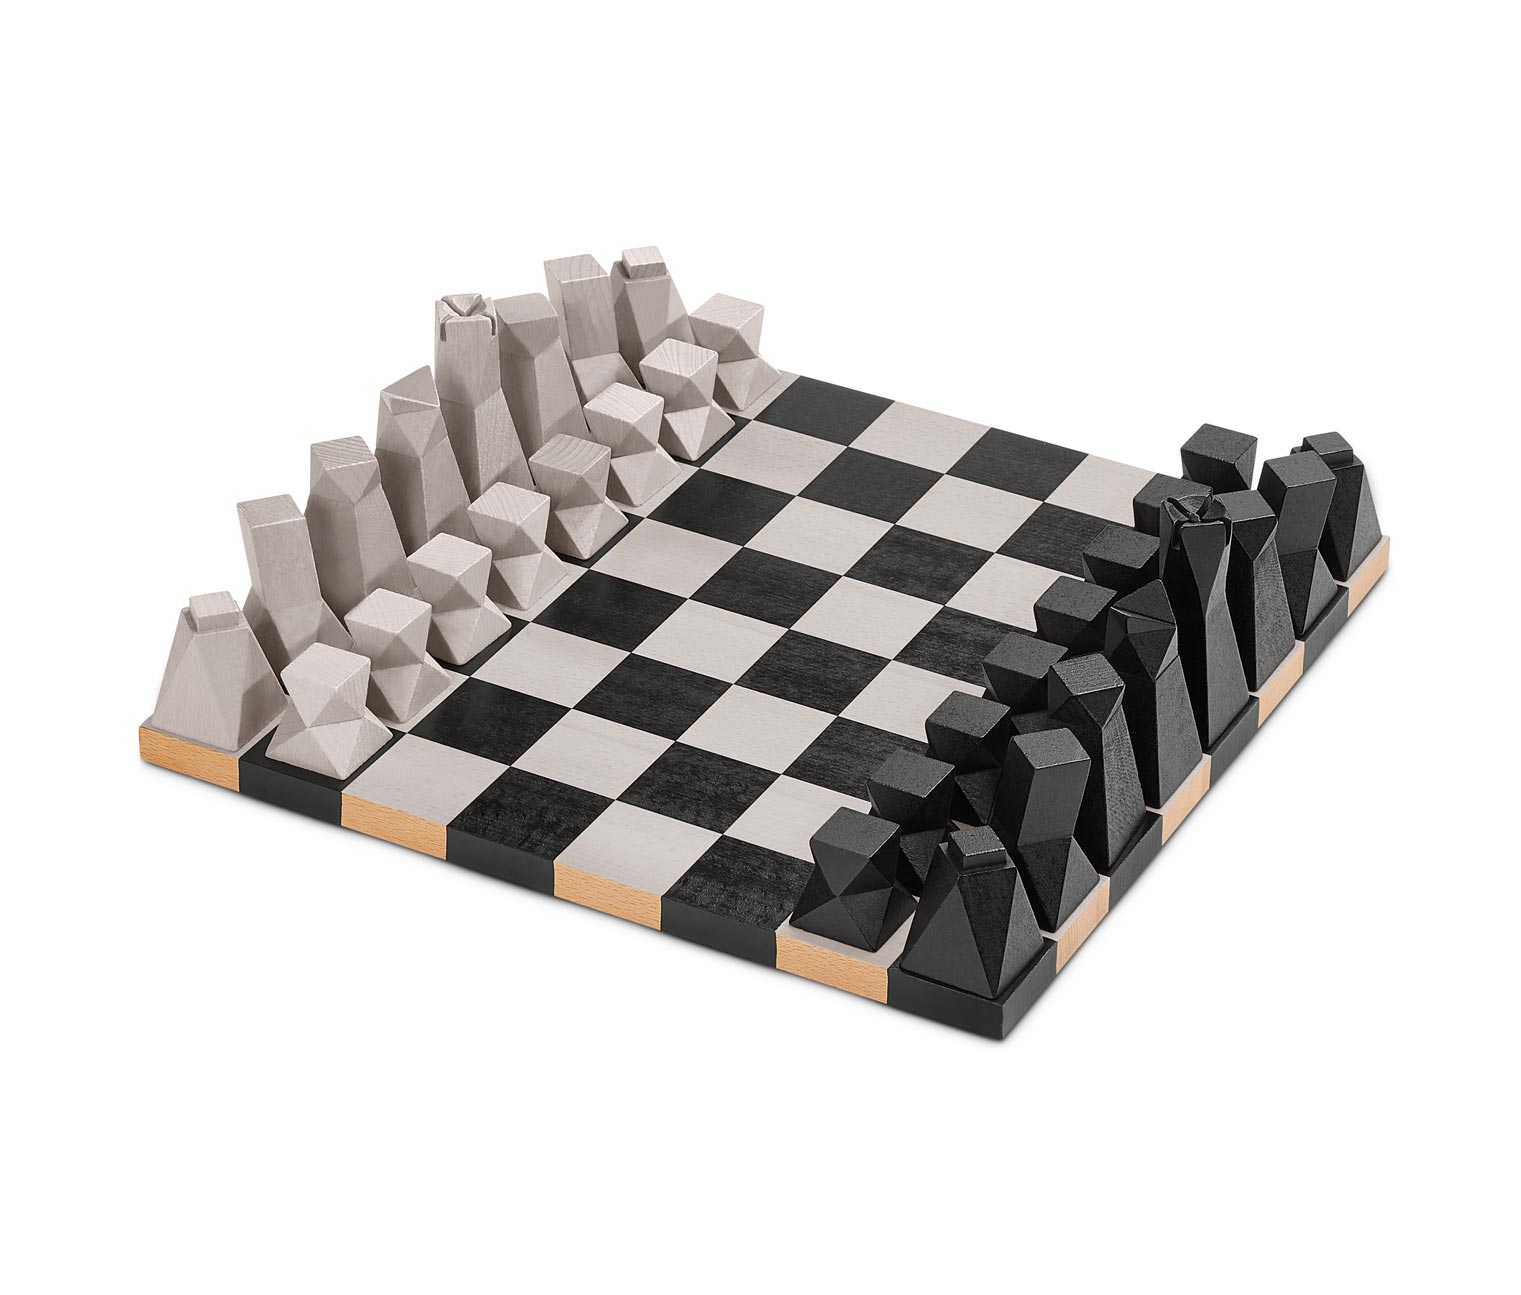 Dizajnový šach 616810 z e-shopu Tchibo.sk